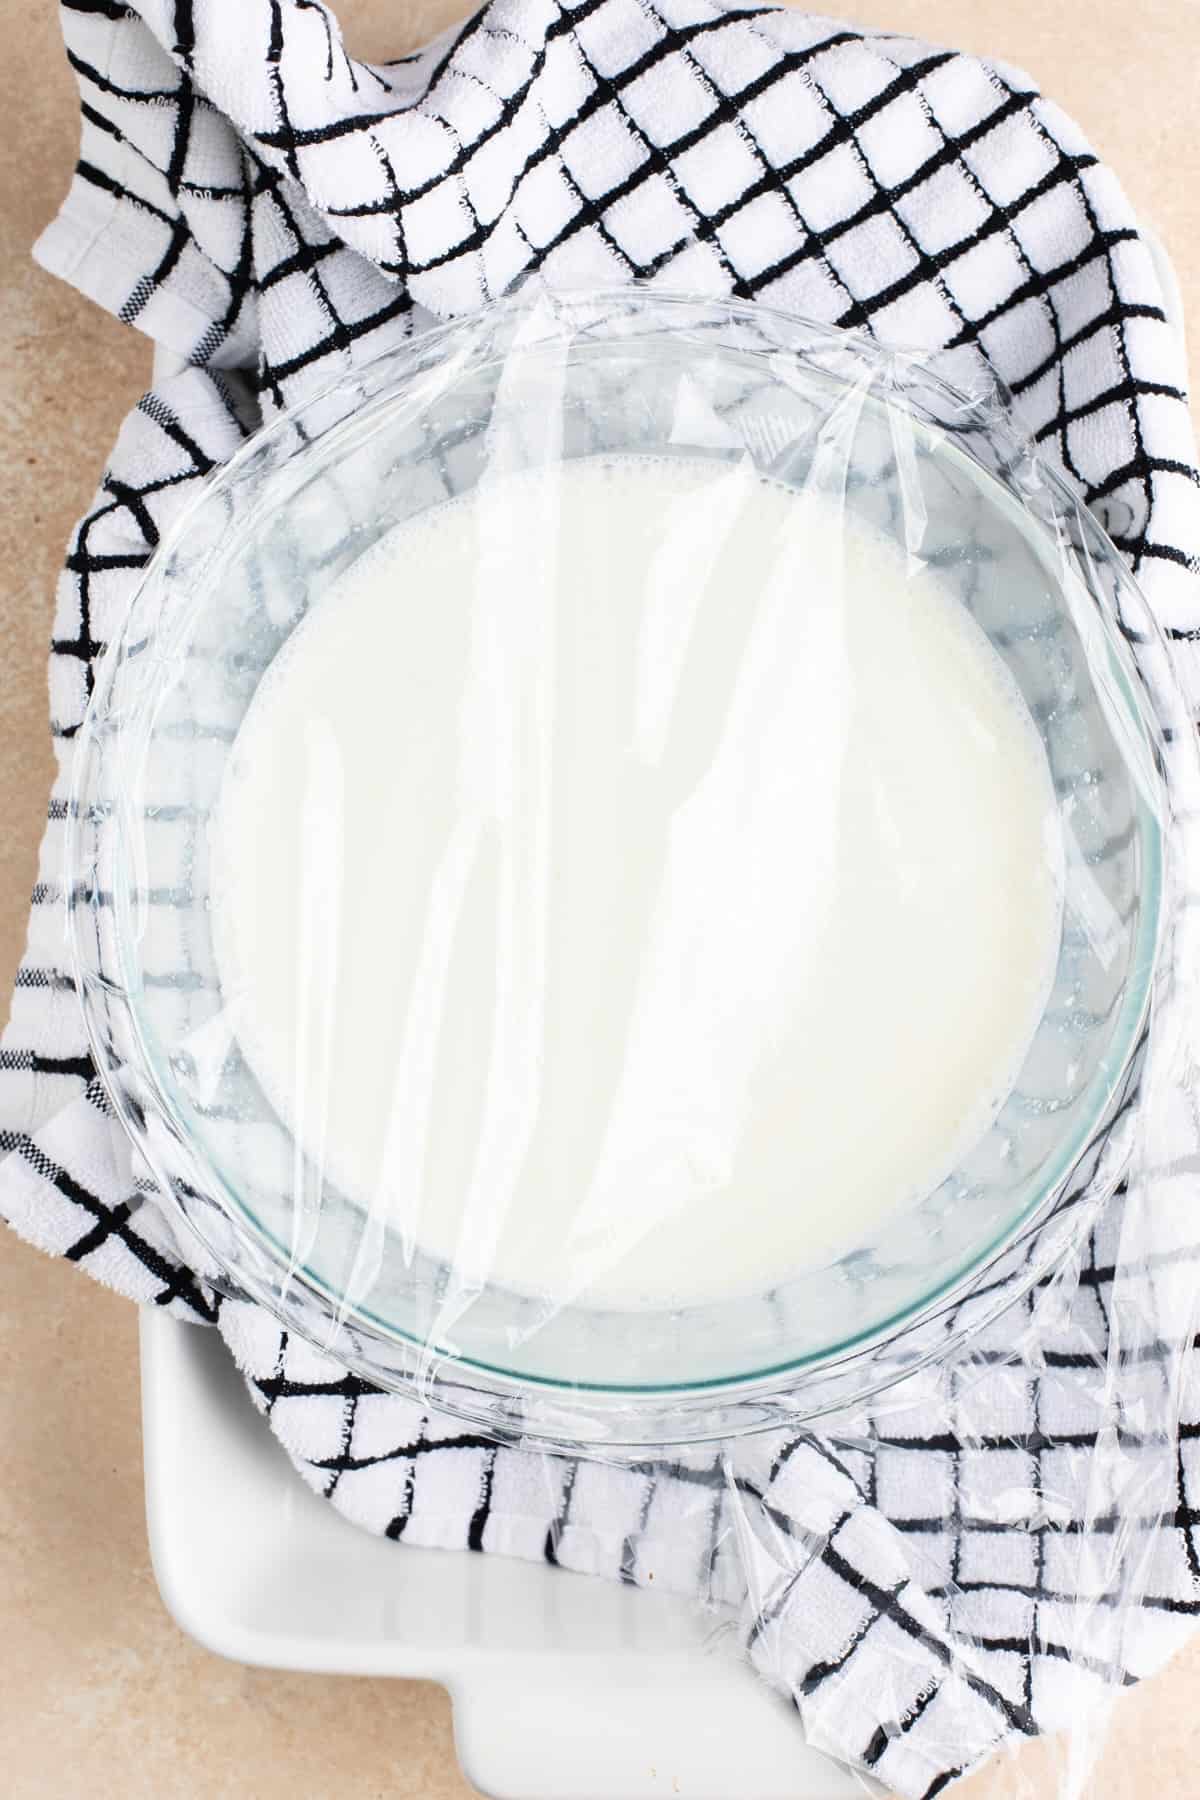 Greek Yogurt recipe